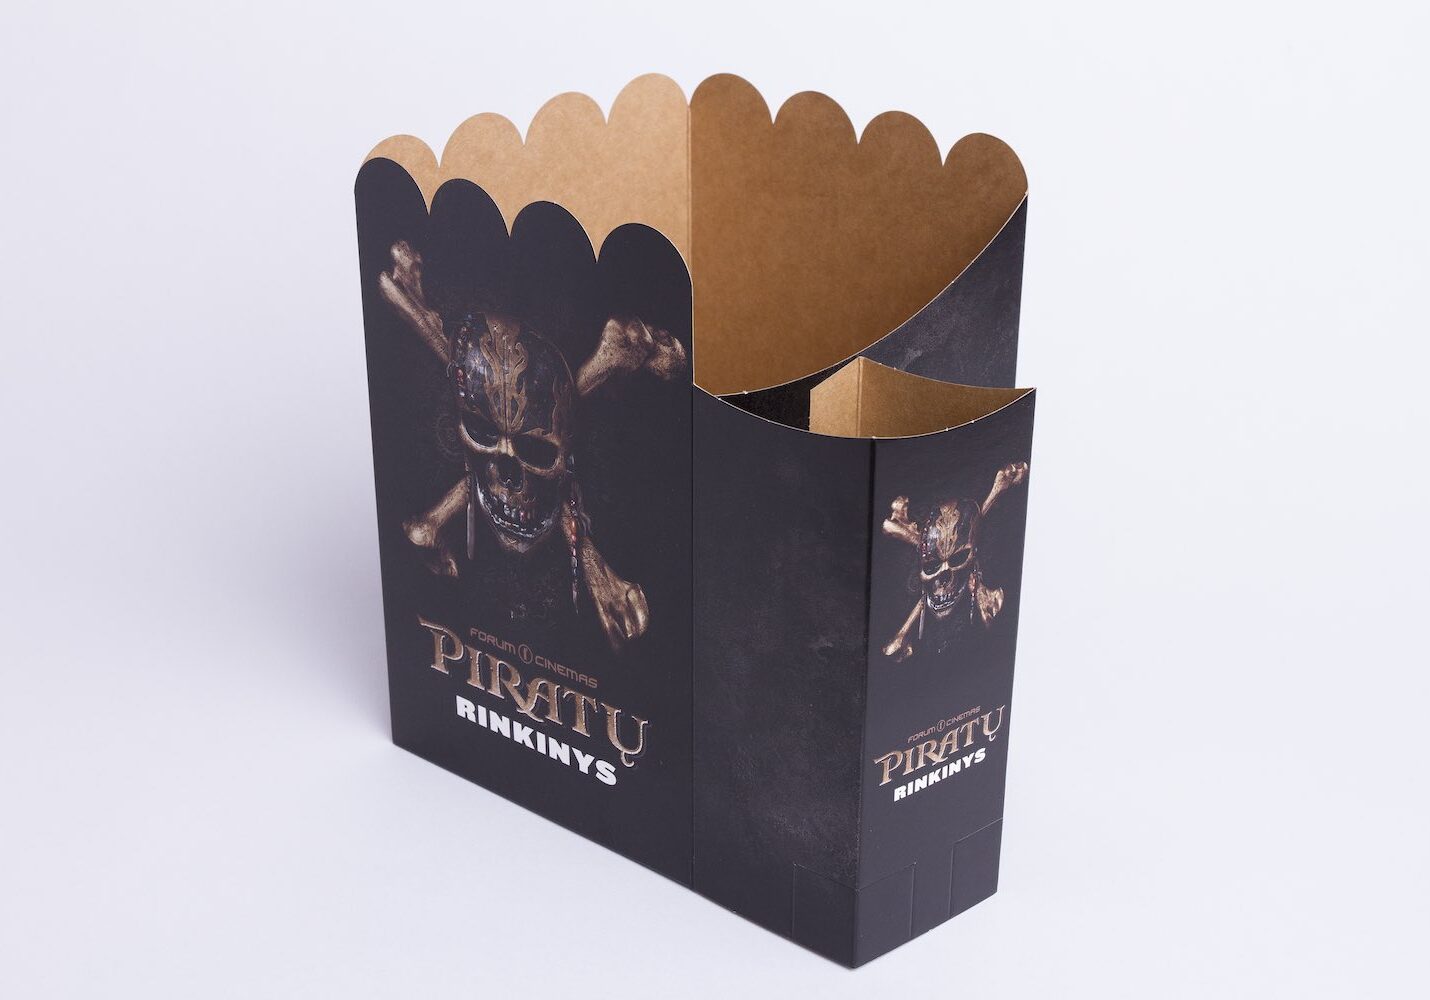 Forum Cinemas packaging by Vilpak